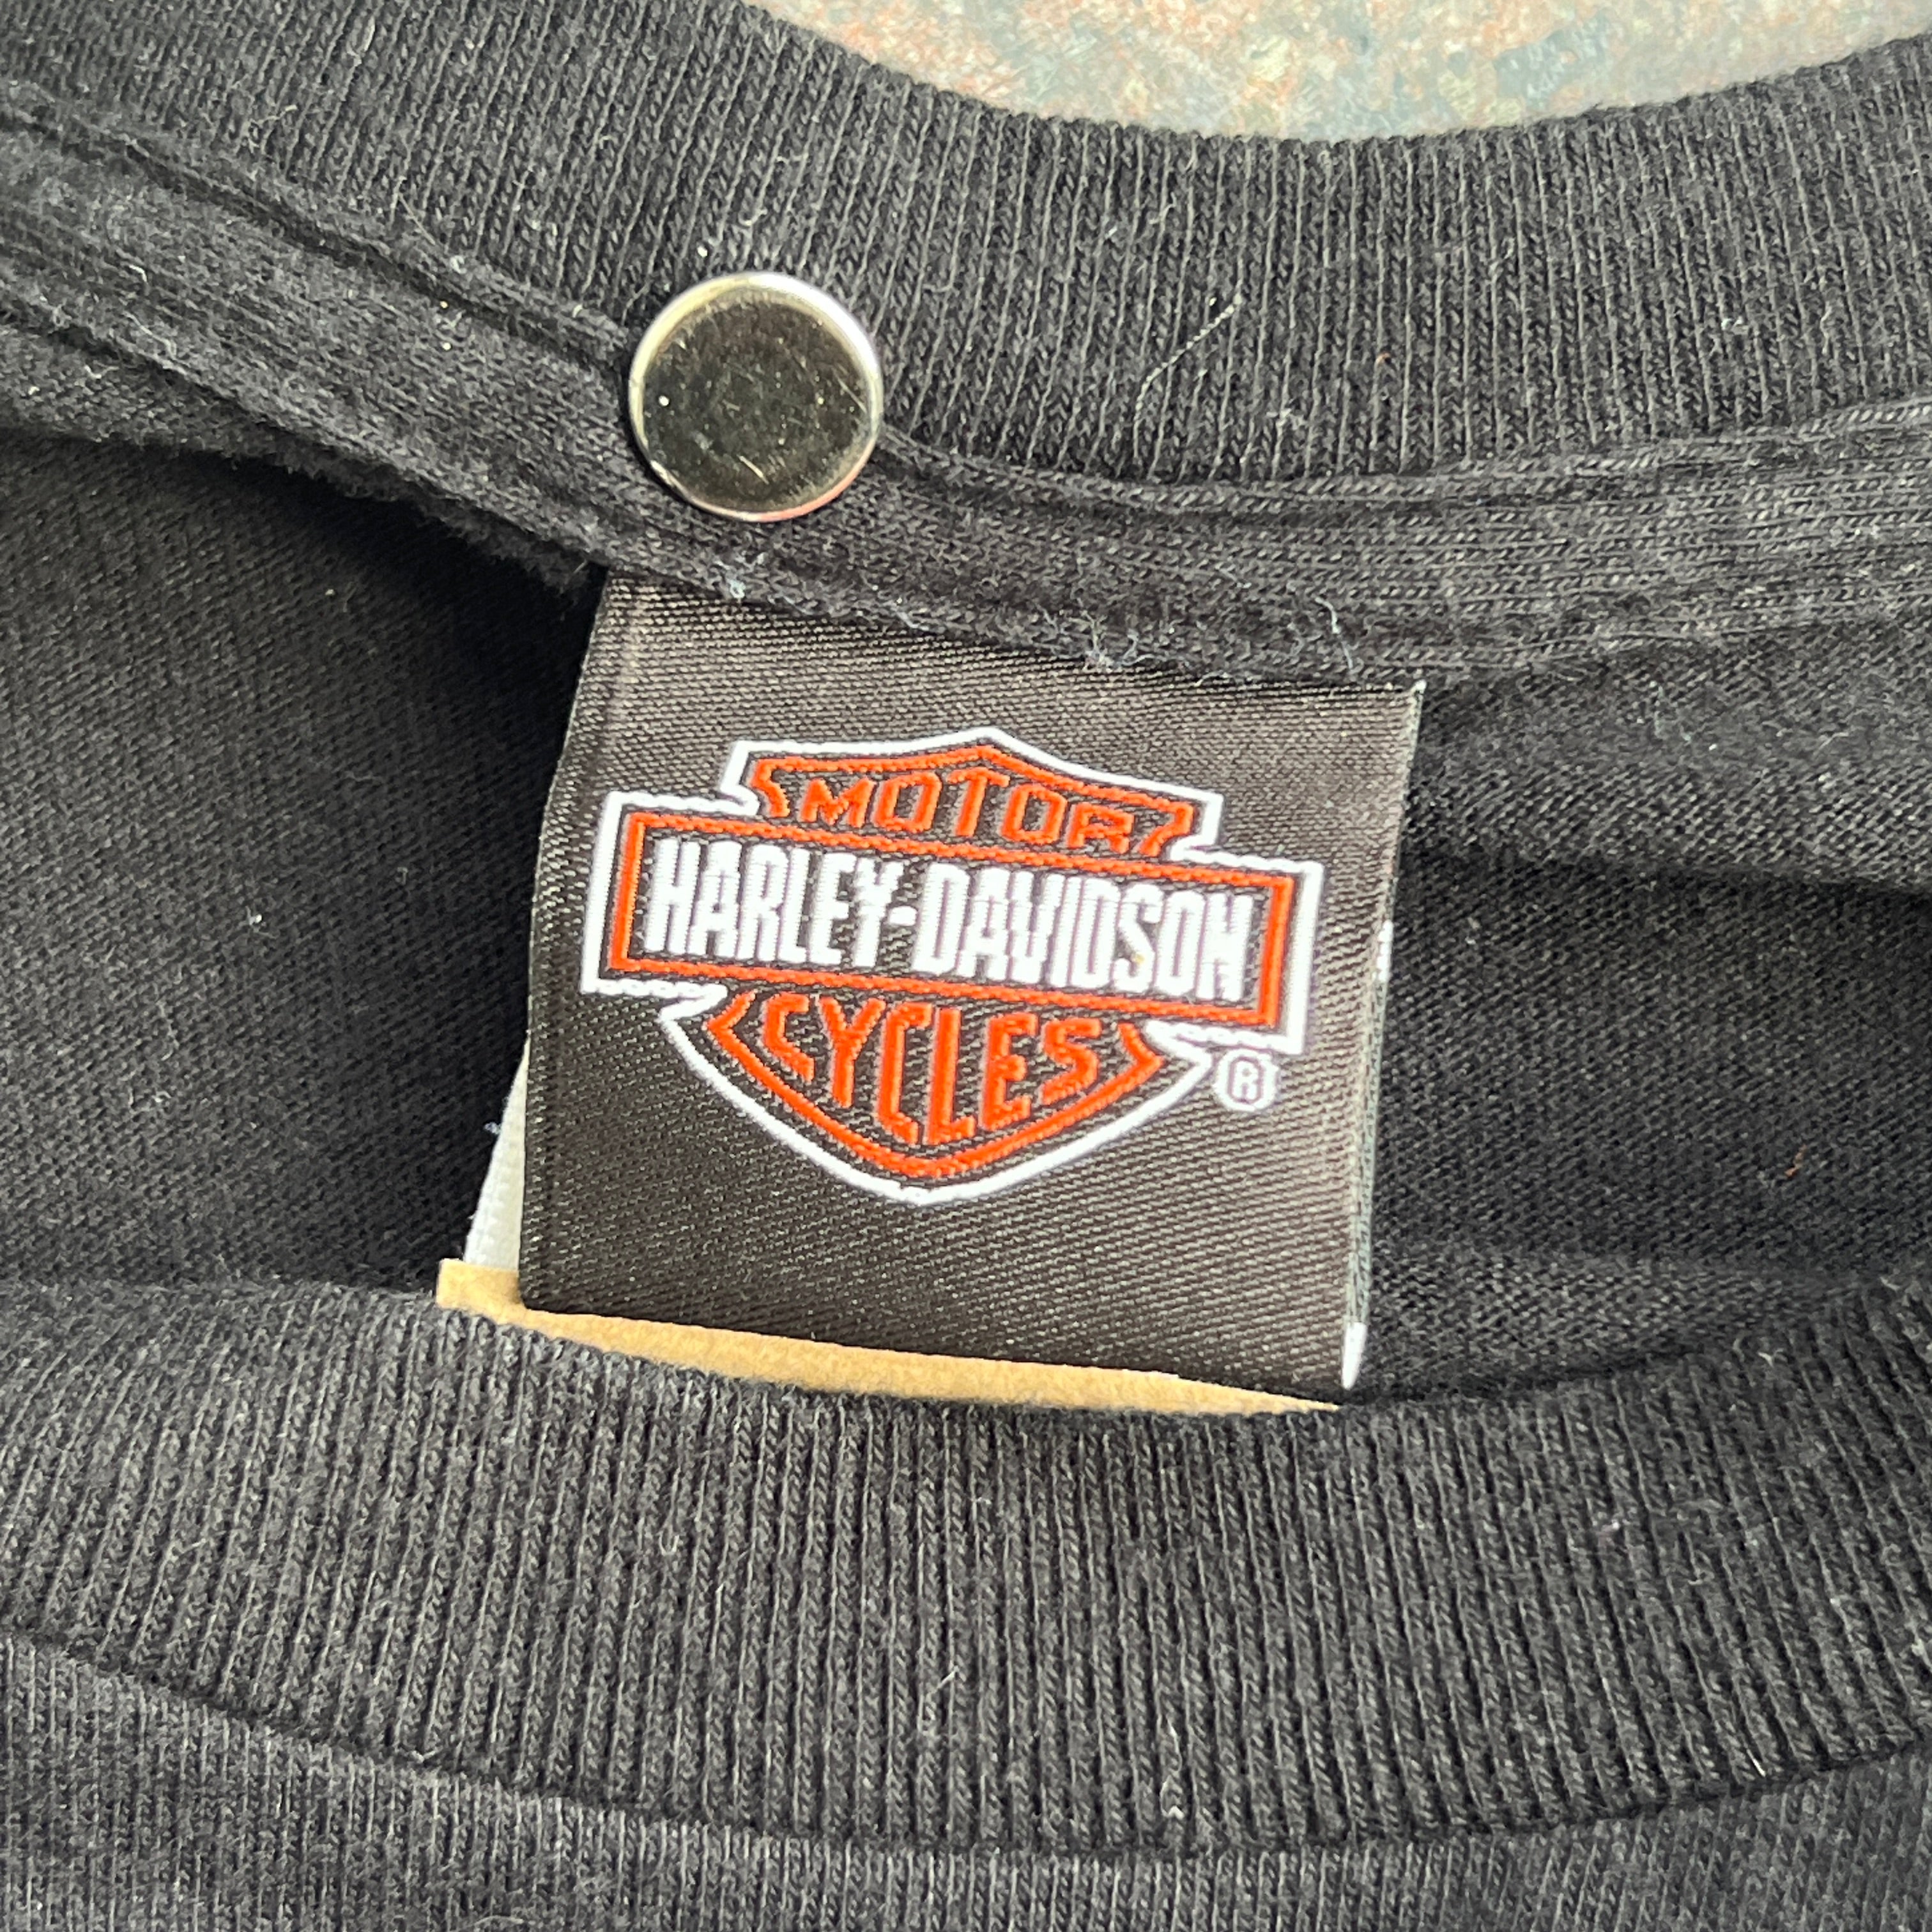 Harley Davidson Patriotism T-Shirt